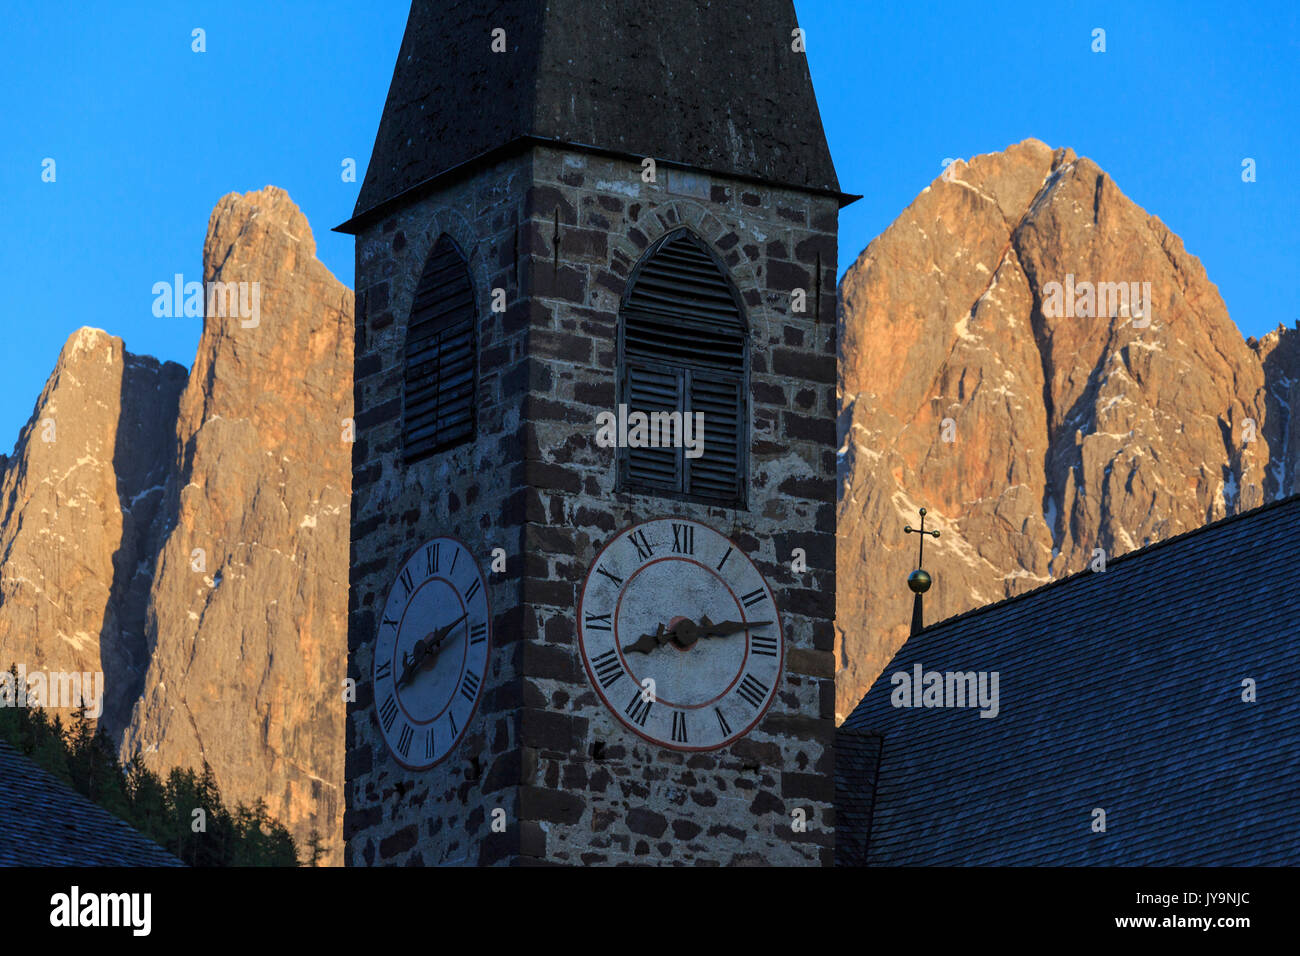 Die Kirche von Ranui und der Geisler-Gruppe im Hintergrund. St. Magdalena Villnösser Tal-Dolomiten-Südtirol-Italien-Europa Stockfoto